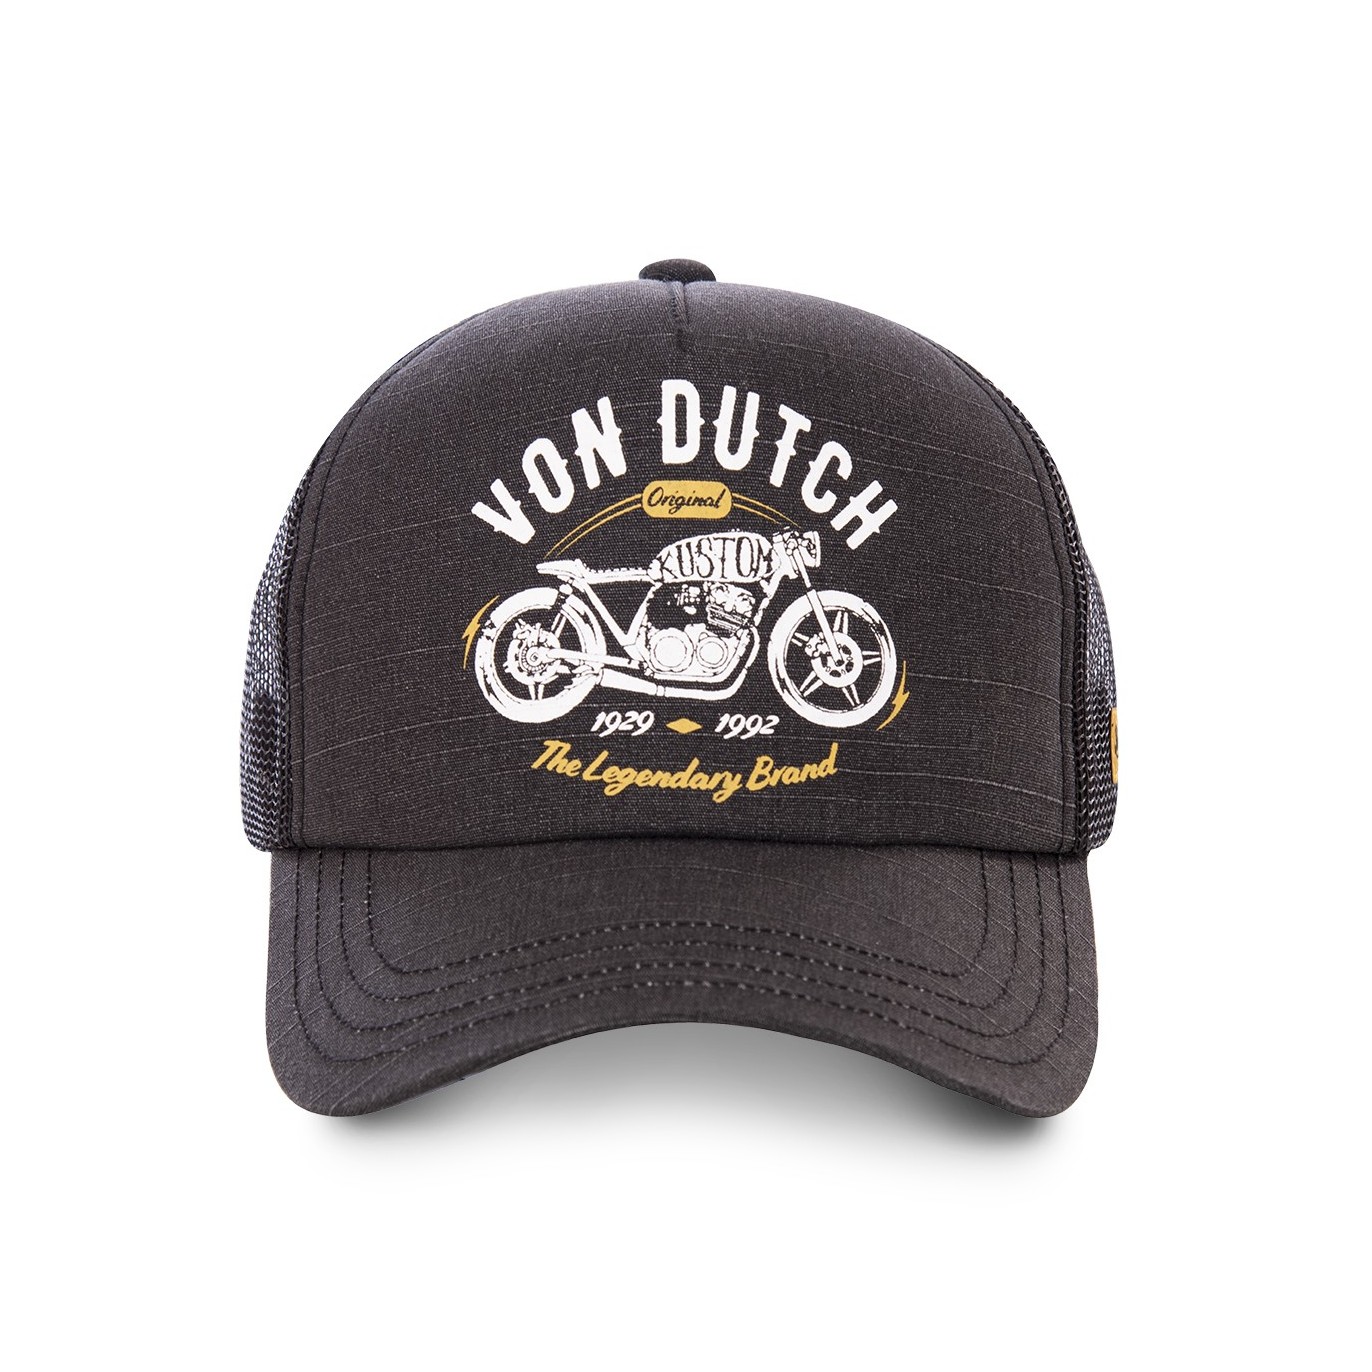 Von Dutch Crew The Legendary Brand trucker cap - Von Dutch